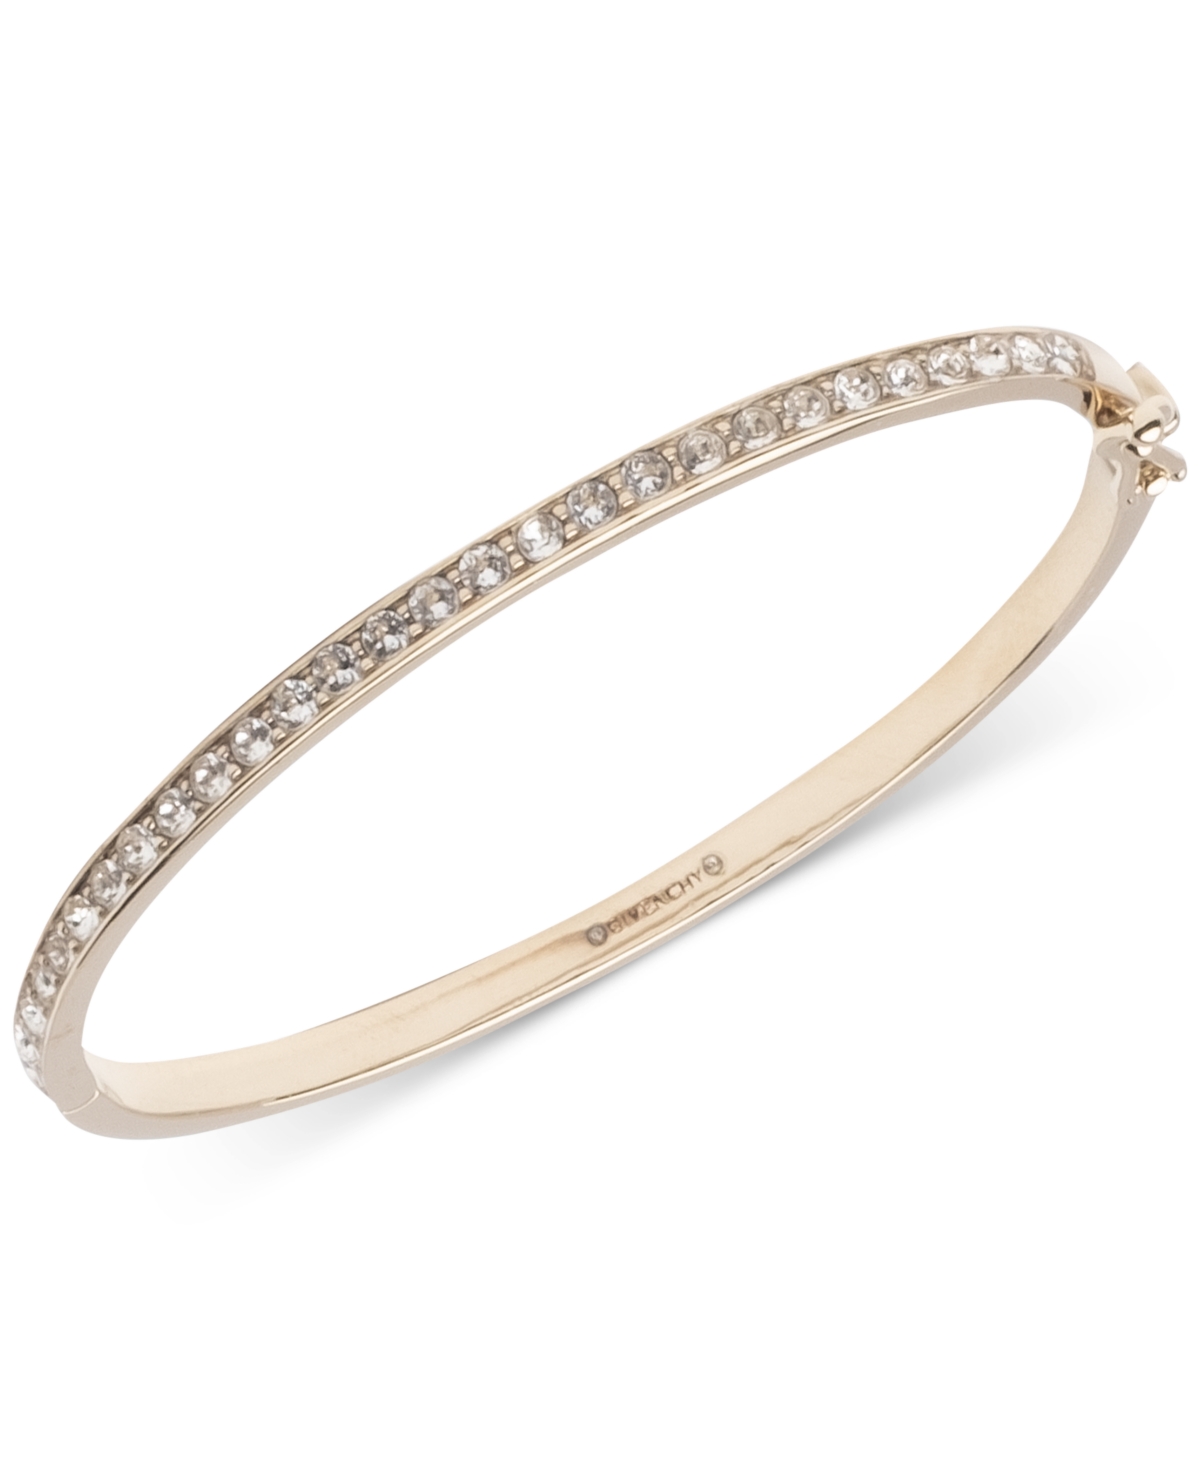 Crystal Element Bangle Bracelet - Gold